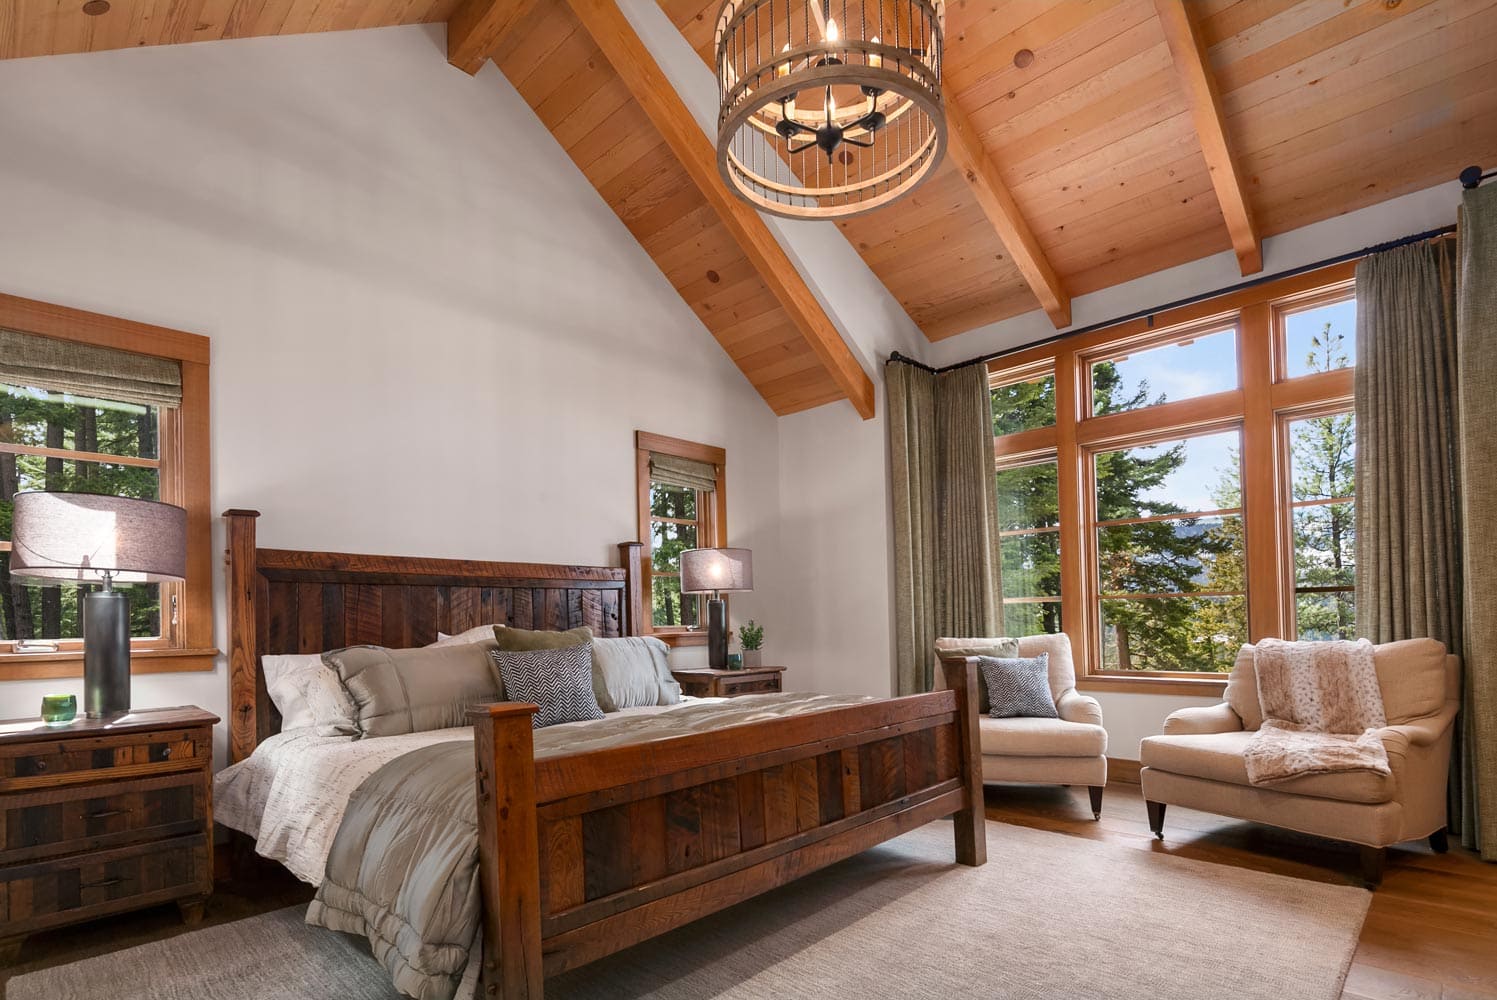 Cascade Mountain Home Bedroom Interior Design